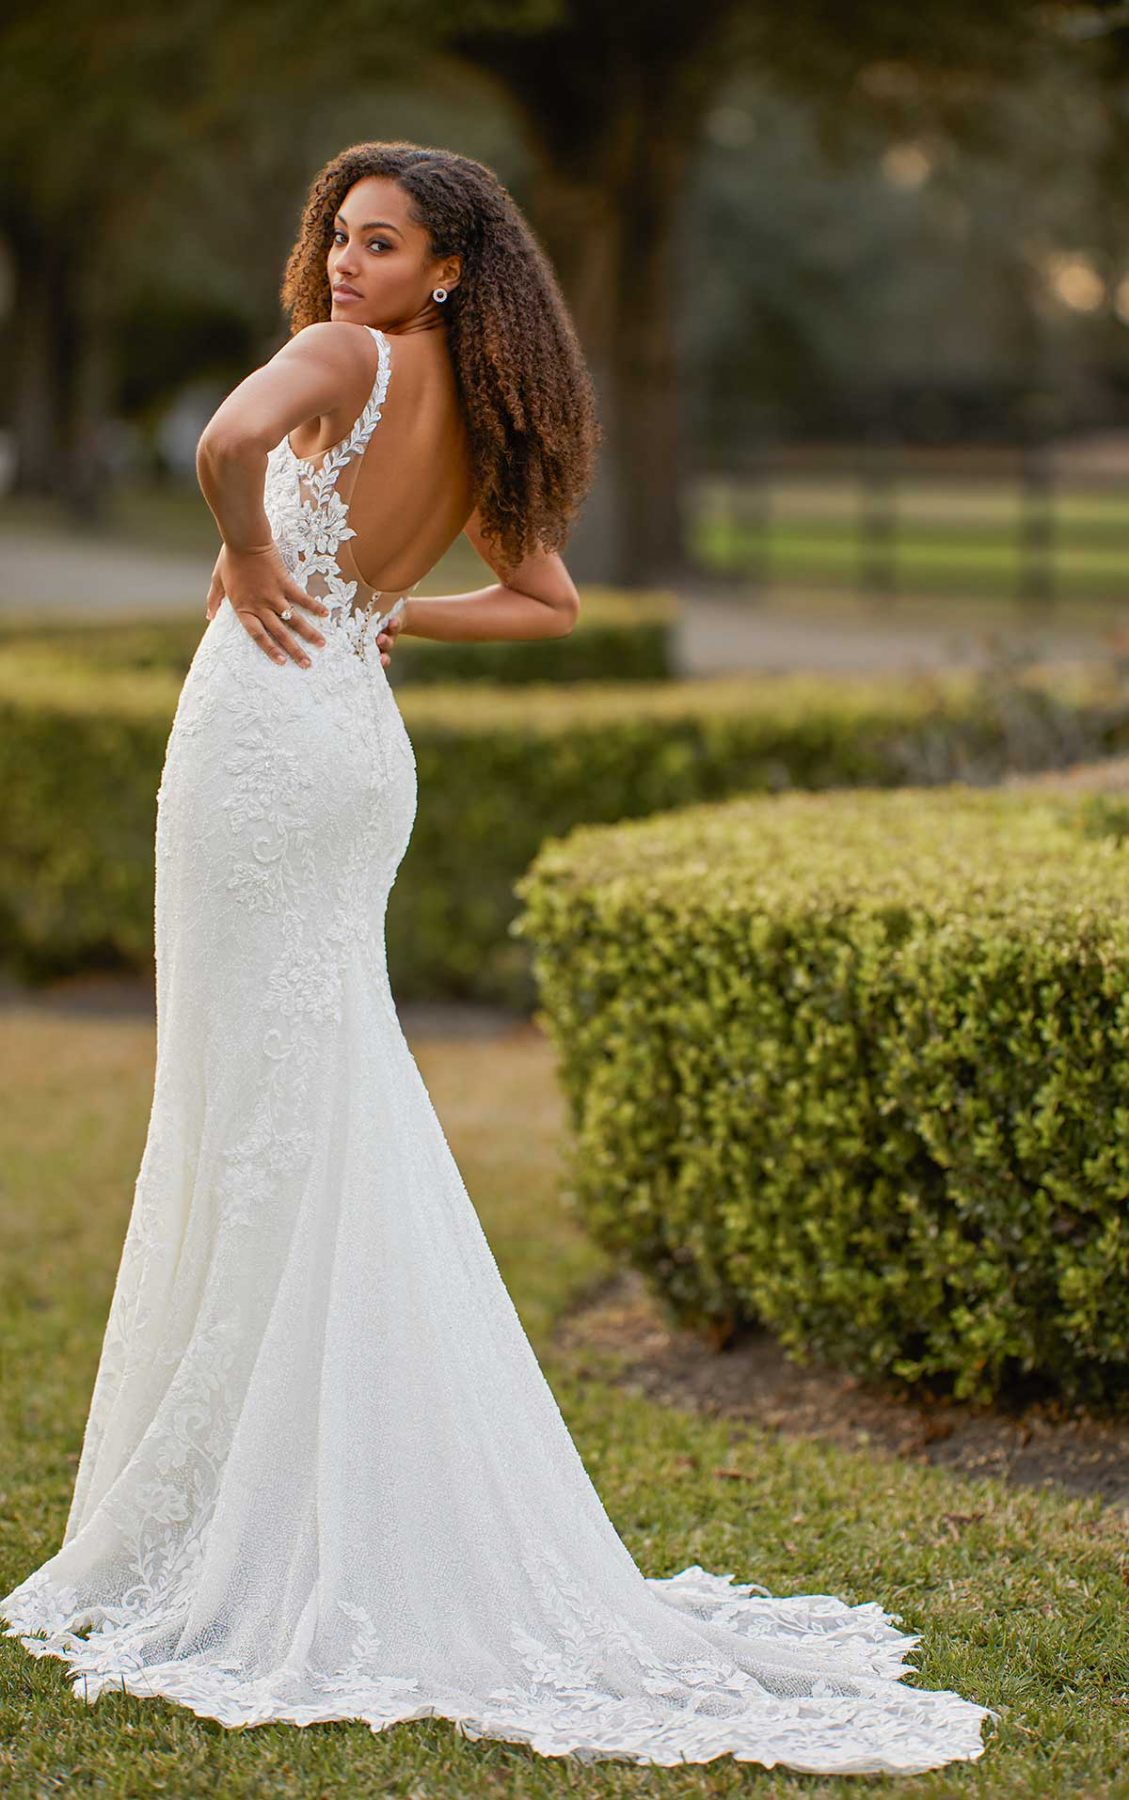 Wedding Dresses Sydney Lace - nelsonismissing